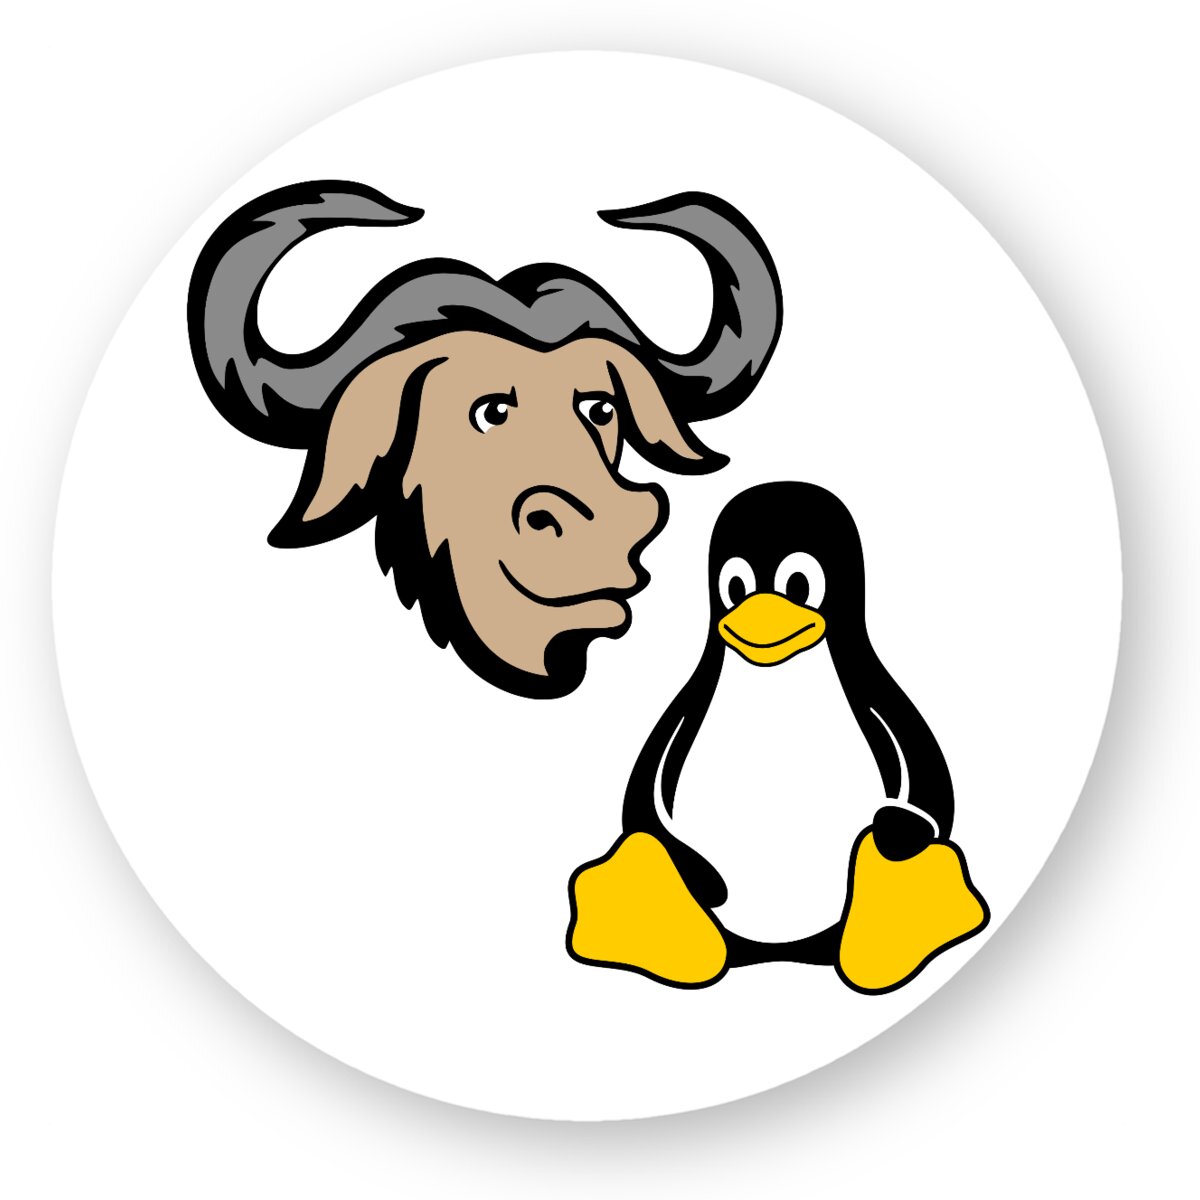 GNU/Linux Sticker (5pcs)